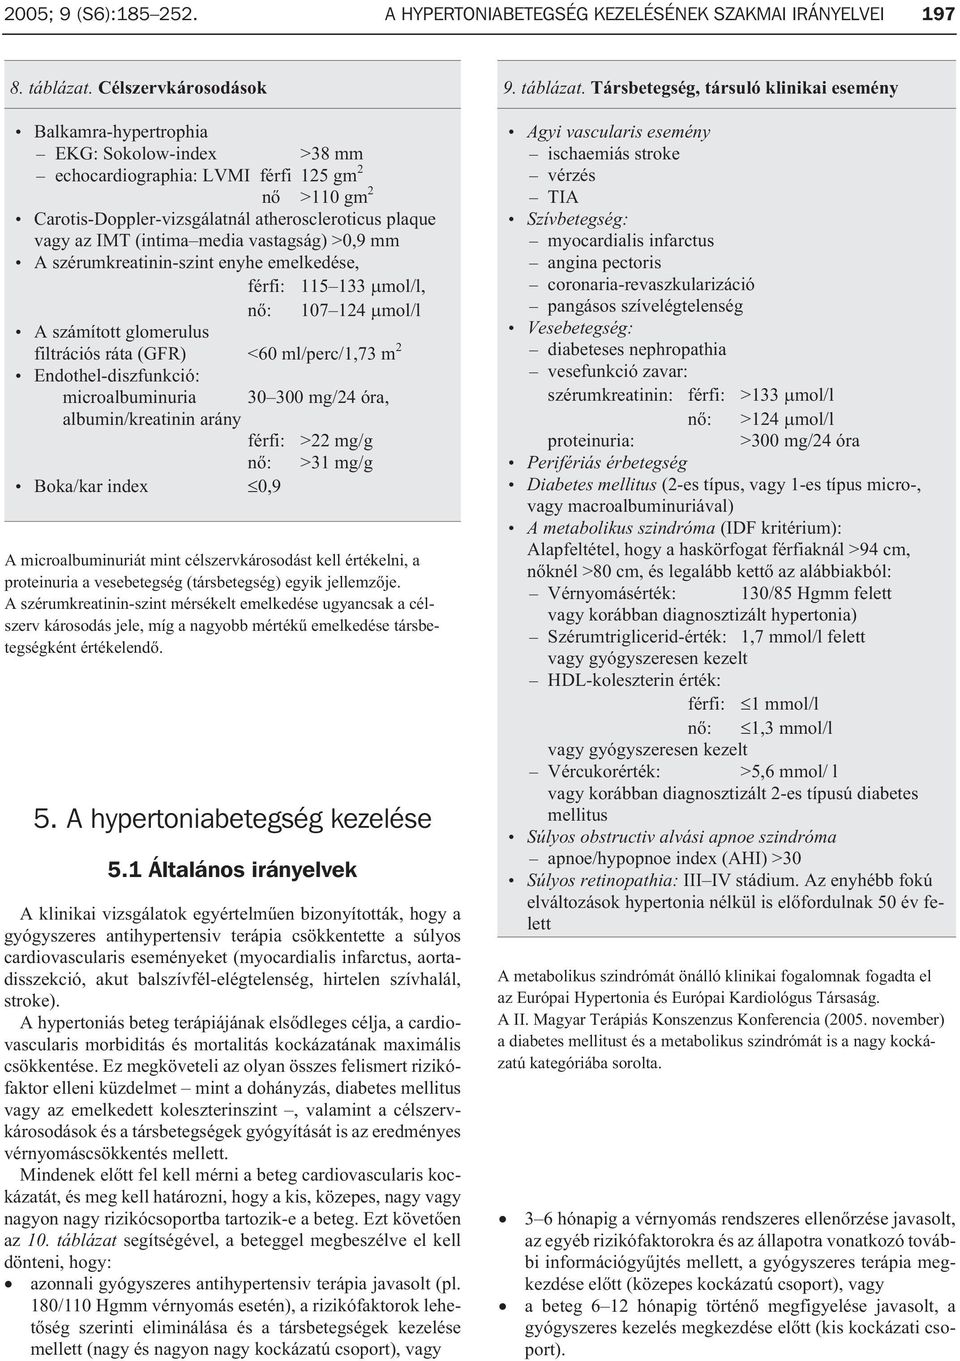 a magas vérnyomás kezelésére vonatkozó klinikai irányelvek)